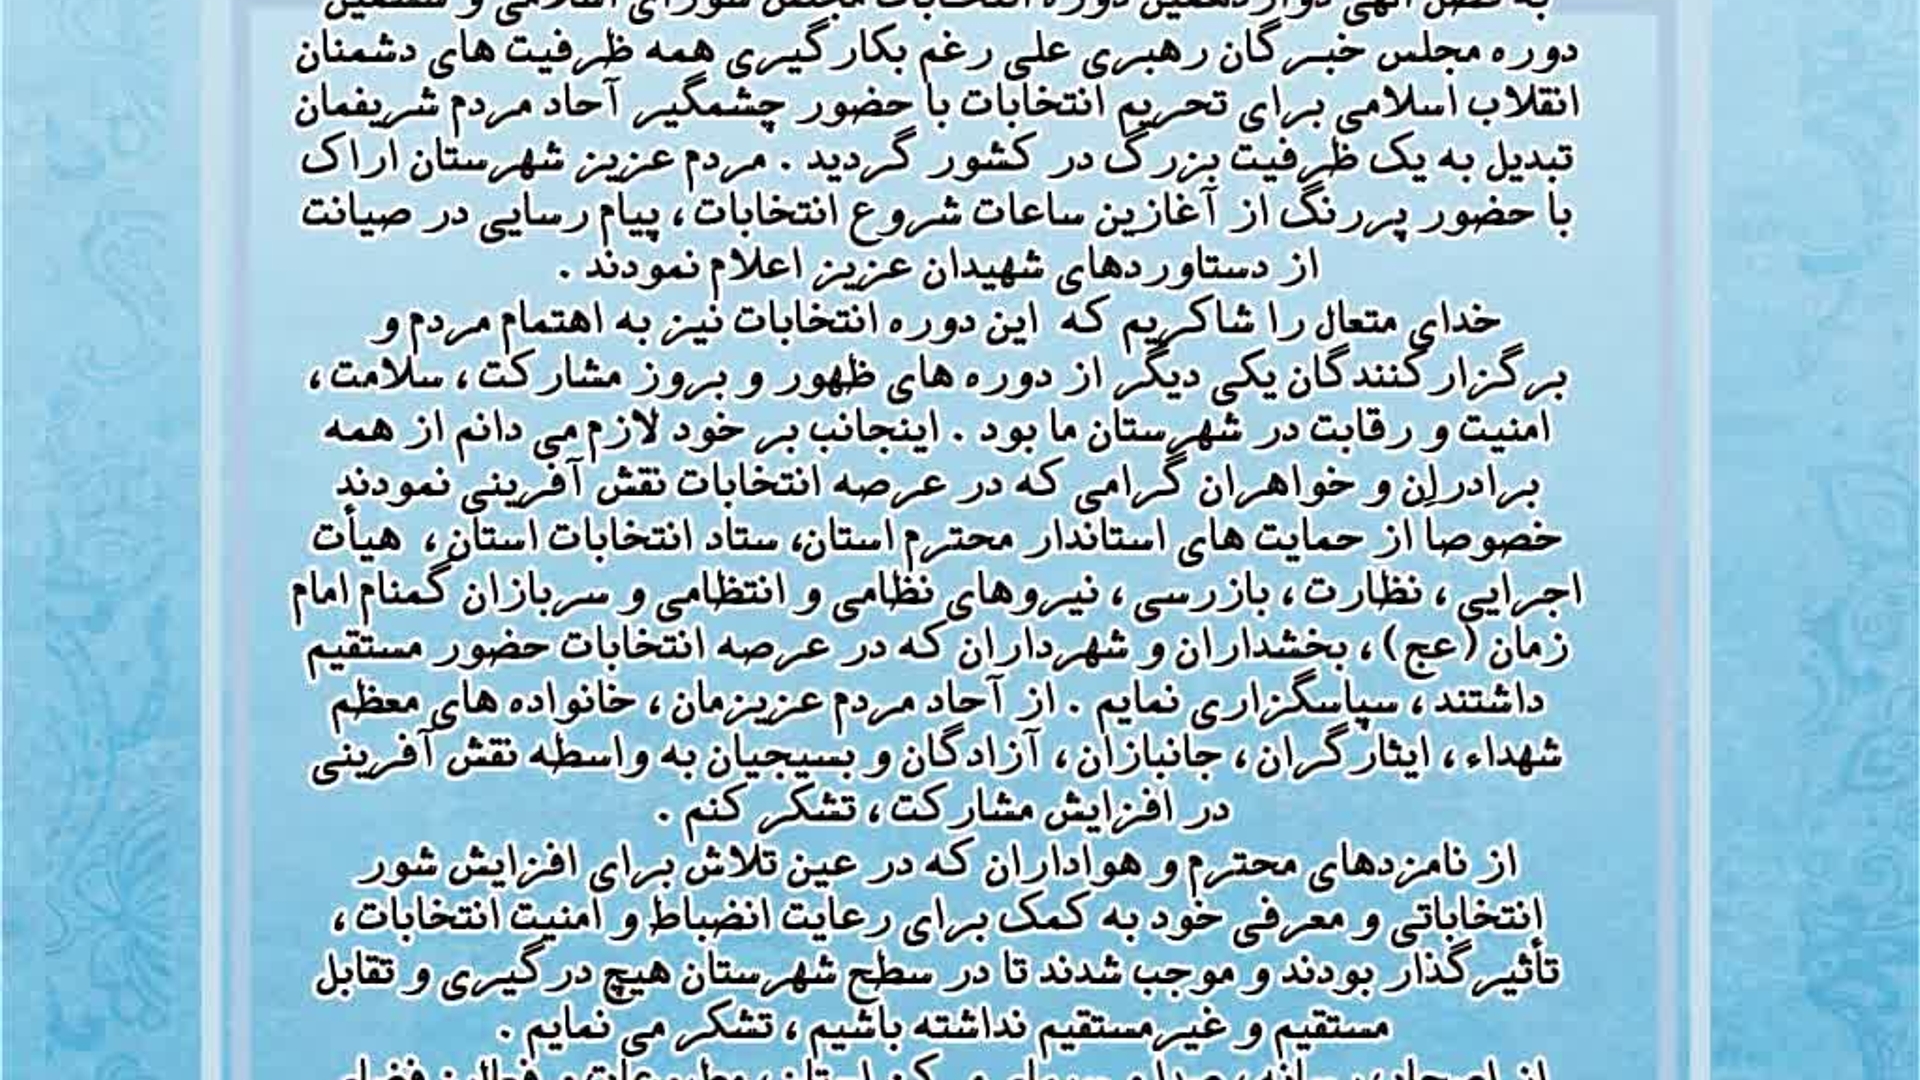 تقدير و تشکر فرماندار شهرستان اراک از مردم  شریف شهرستان اراک وعوامل اجرایی انتخابات